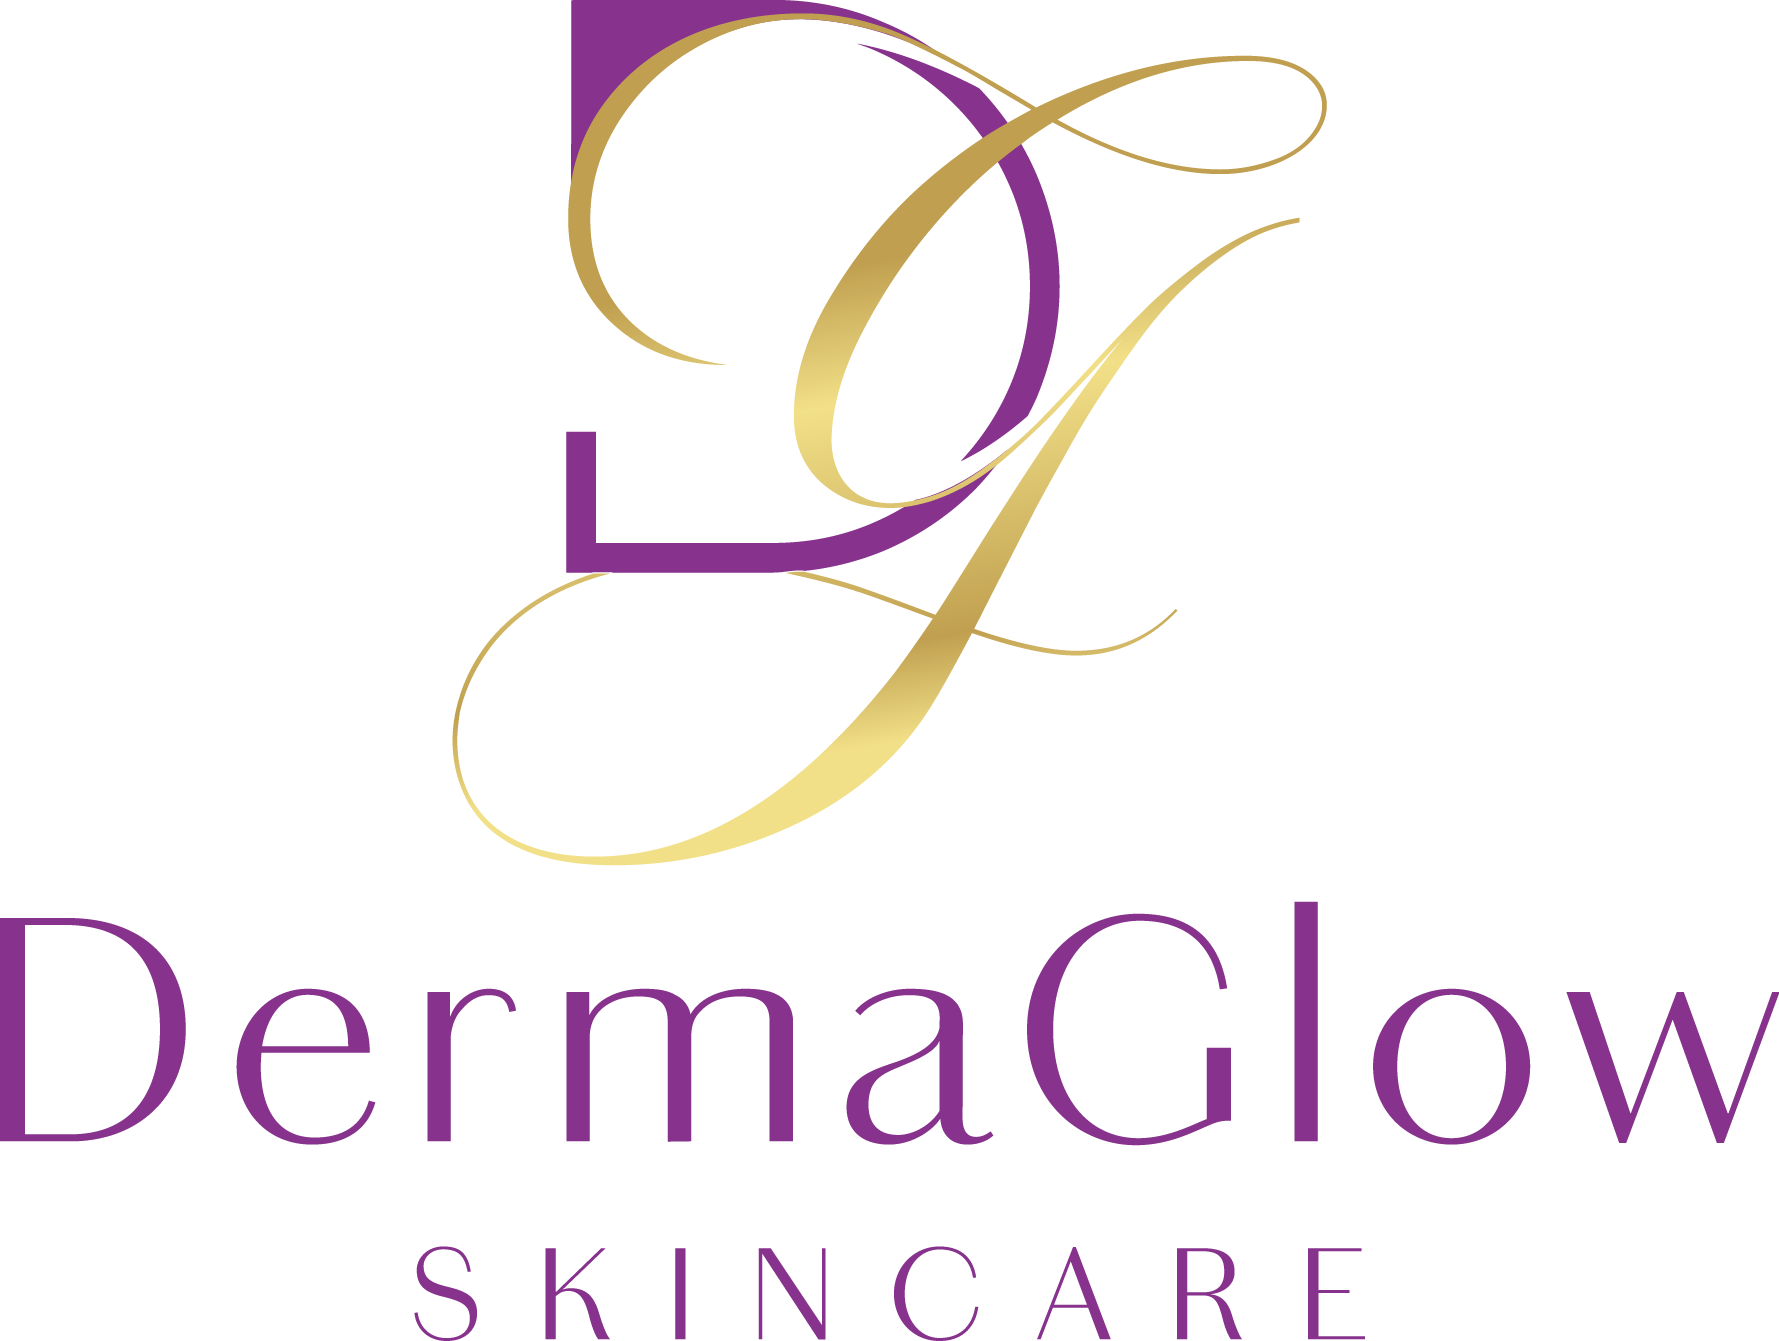 Dermaglow Skincare Store